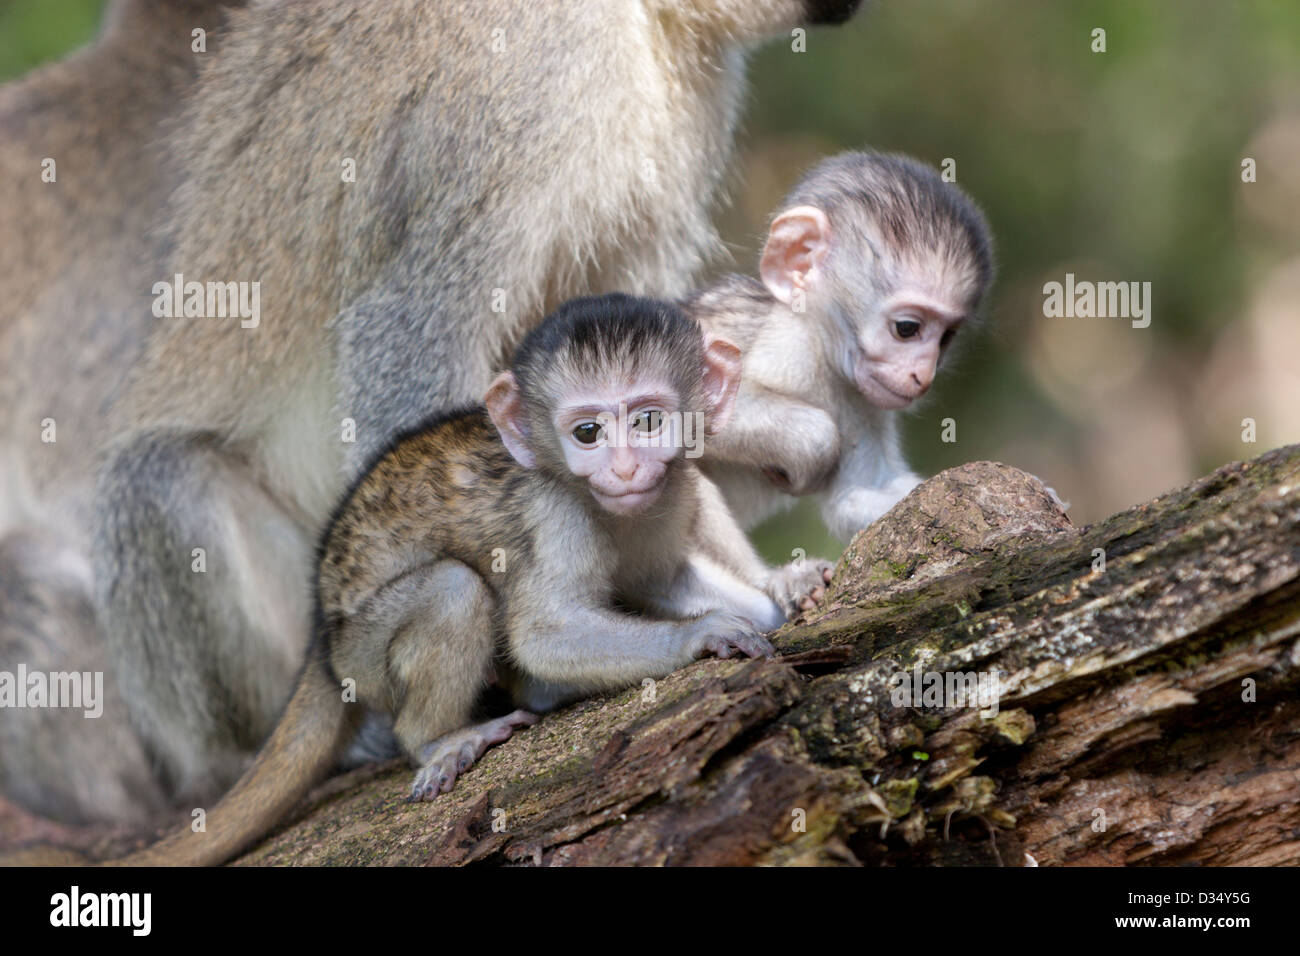 Vevet monkey primate babies Africa Uganda Stock Photo